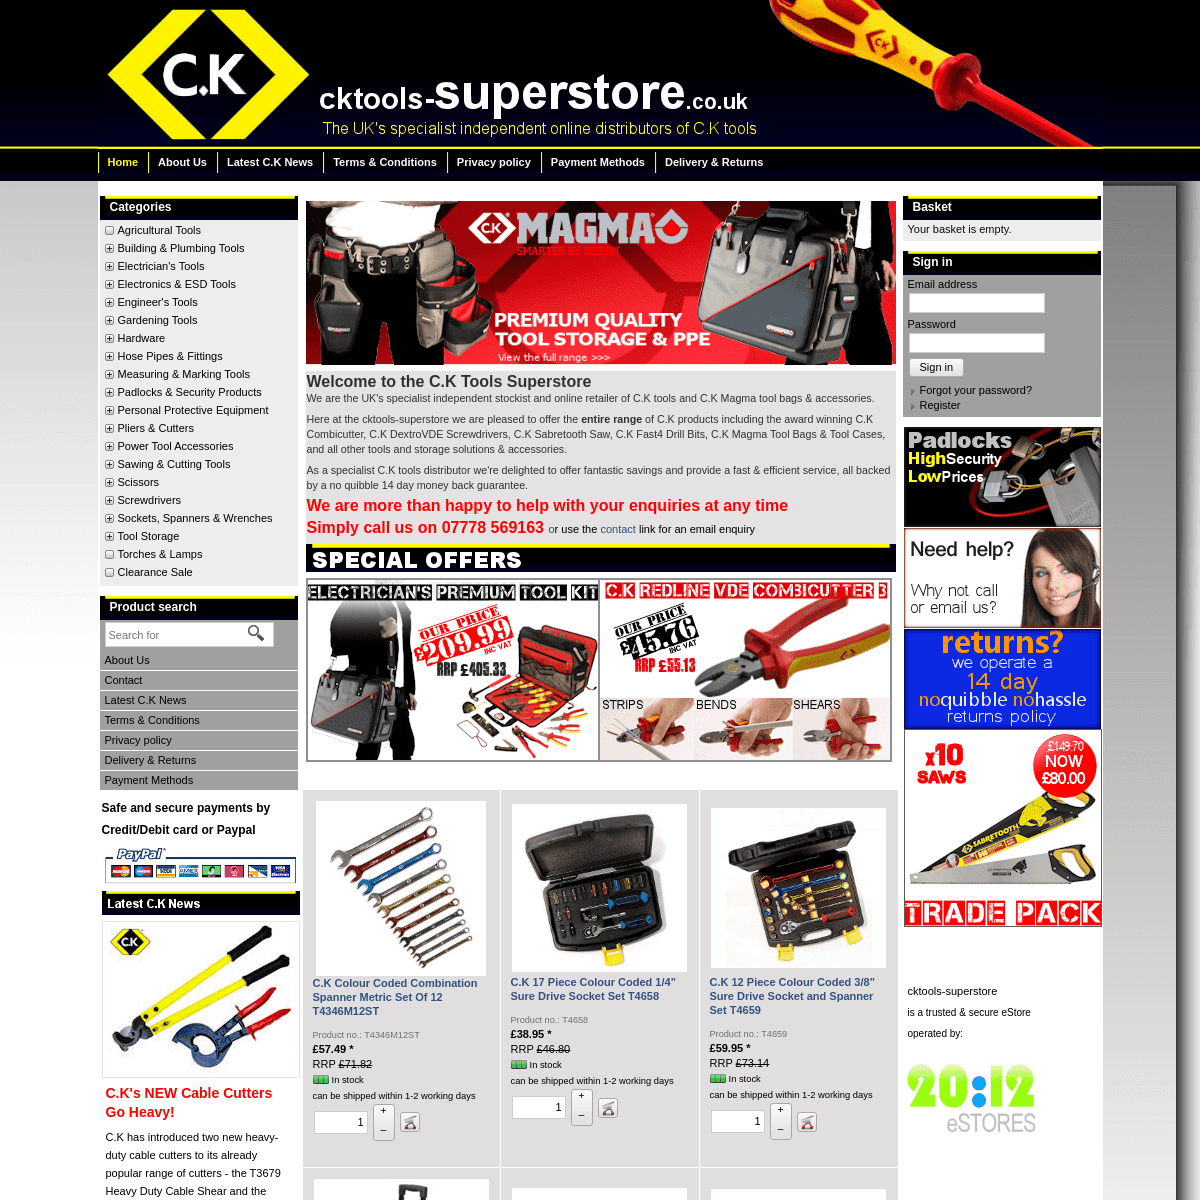 A complete backup of cktools-superstore.co.uk